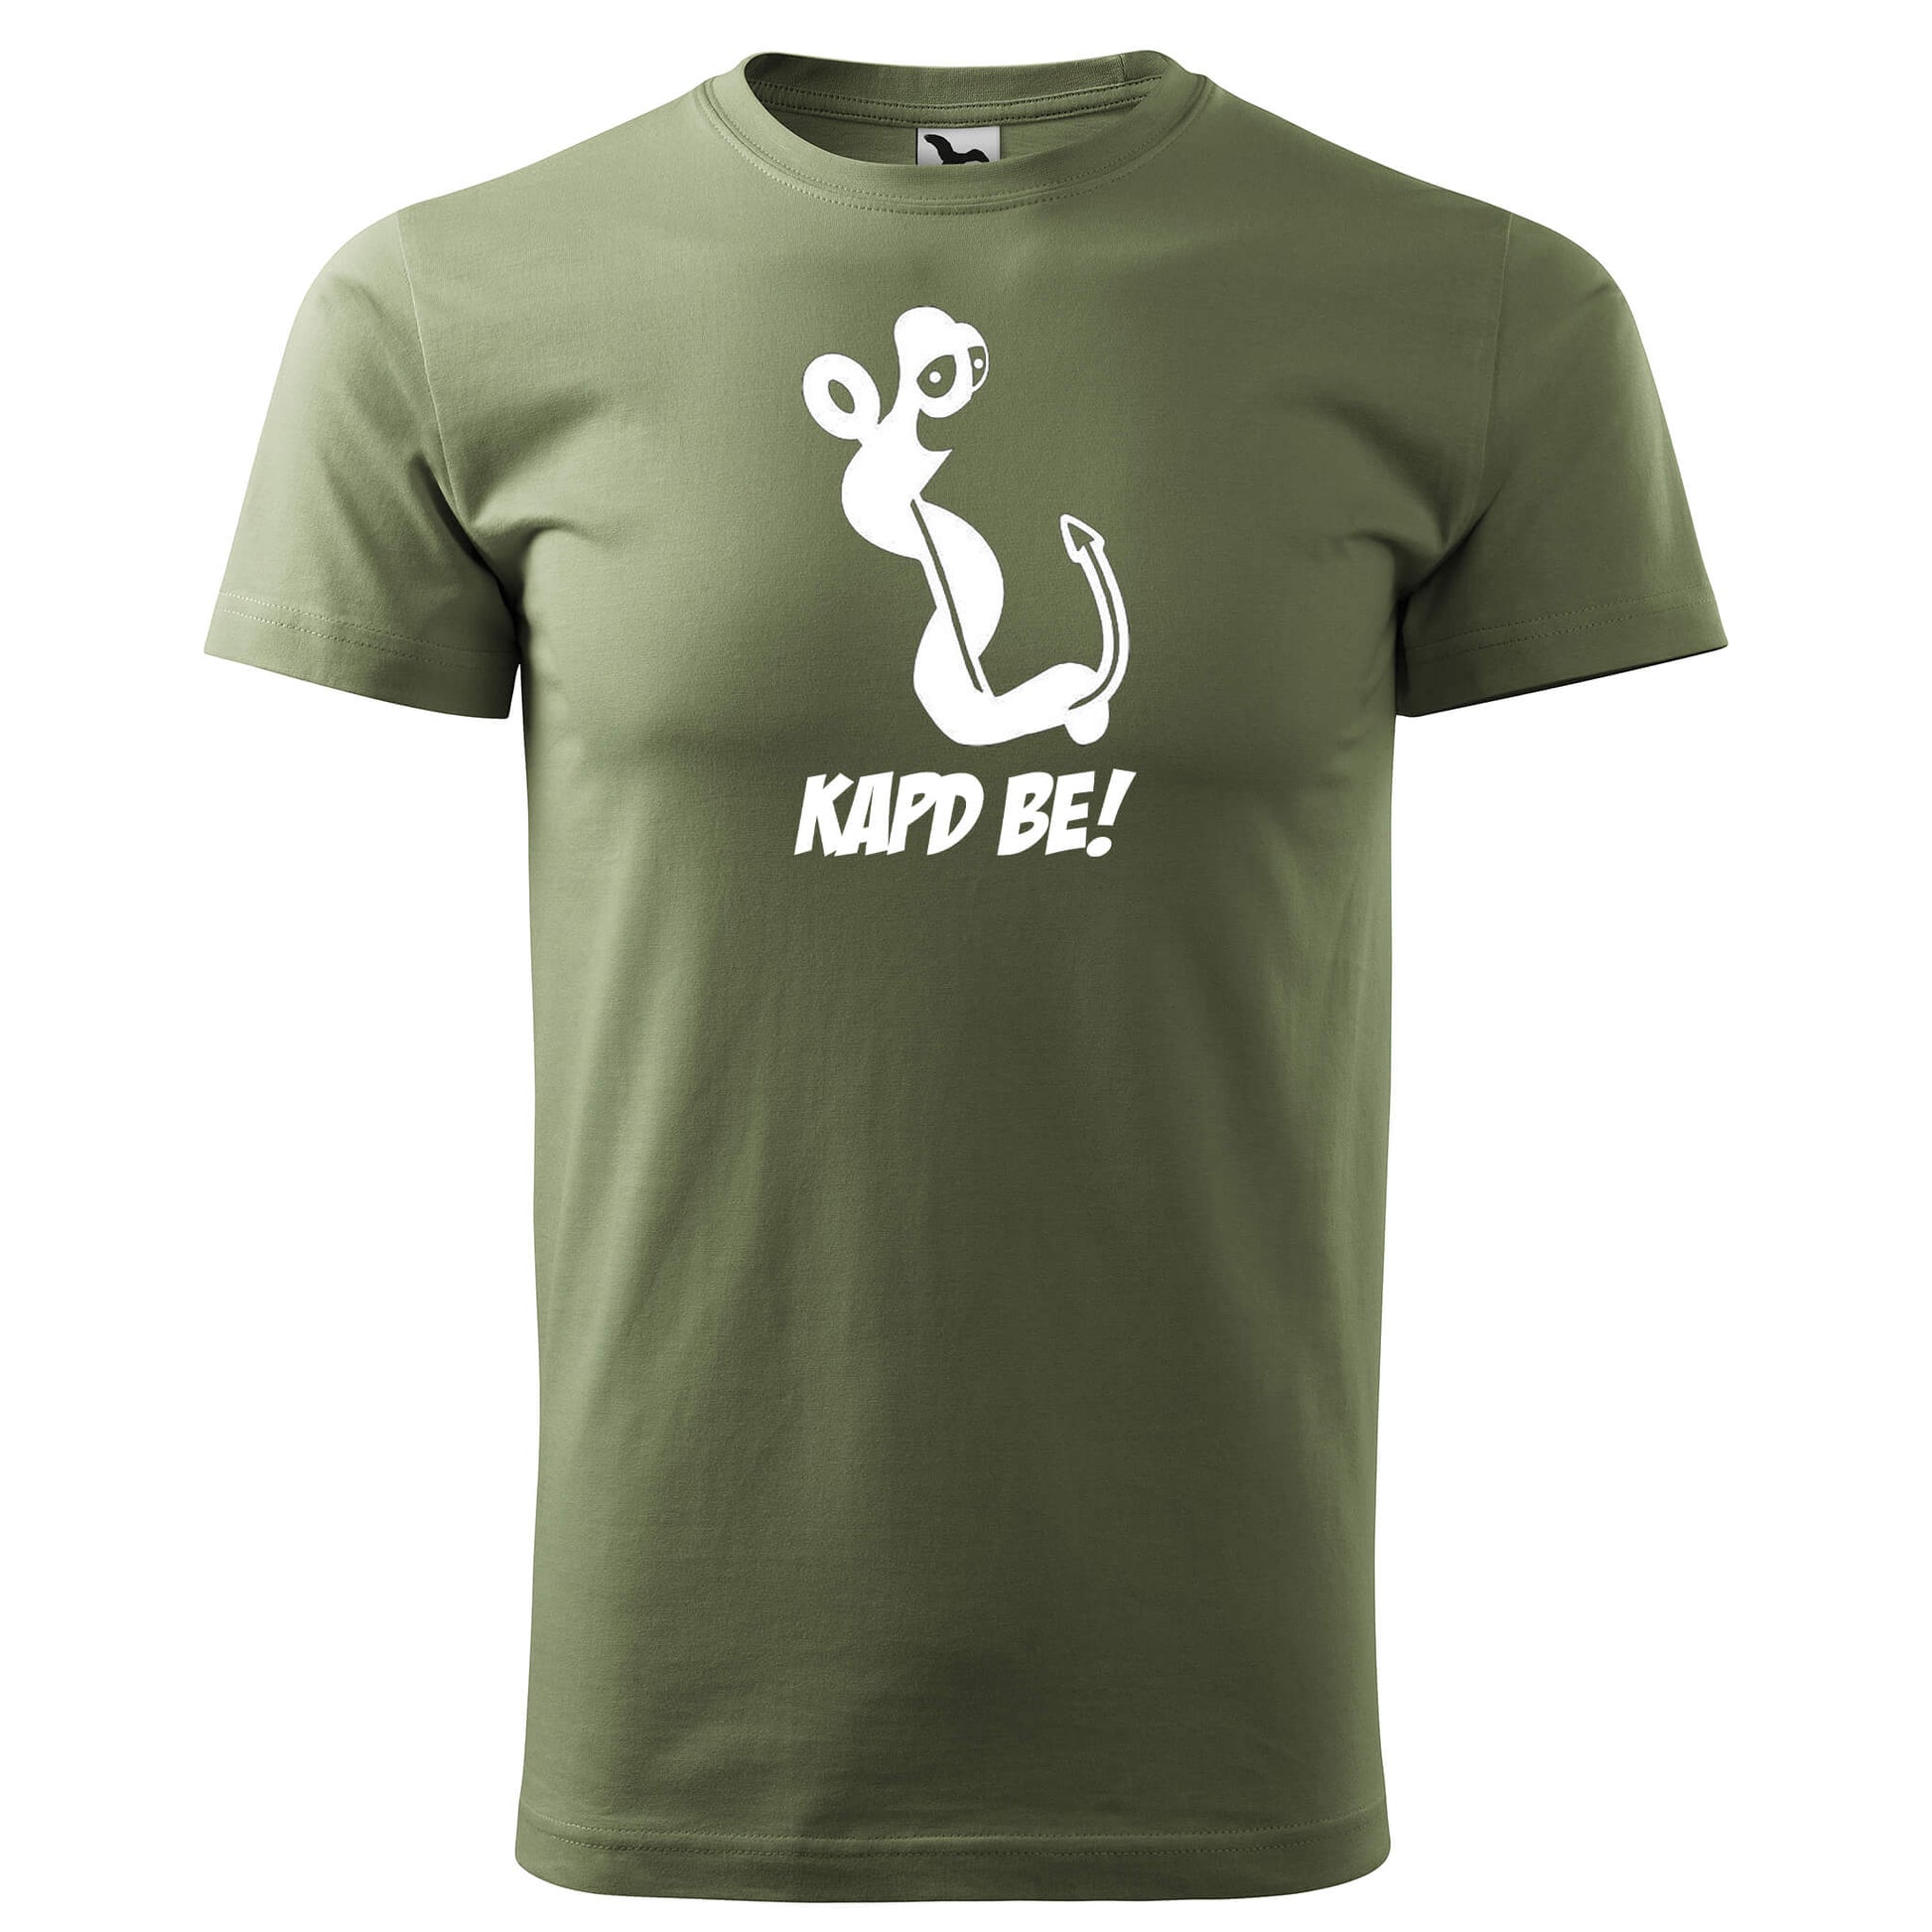 T-shirt - Kapd be! - rvdesignprint